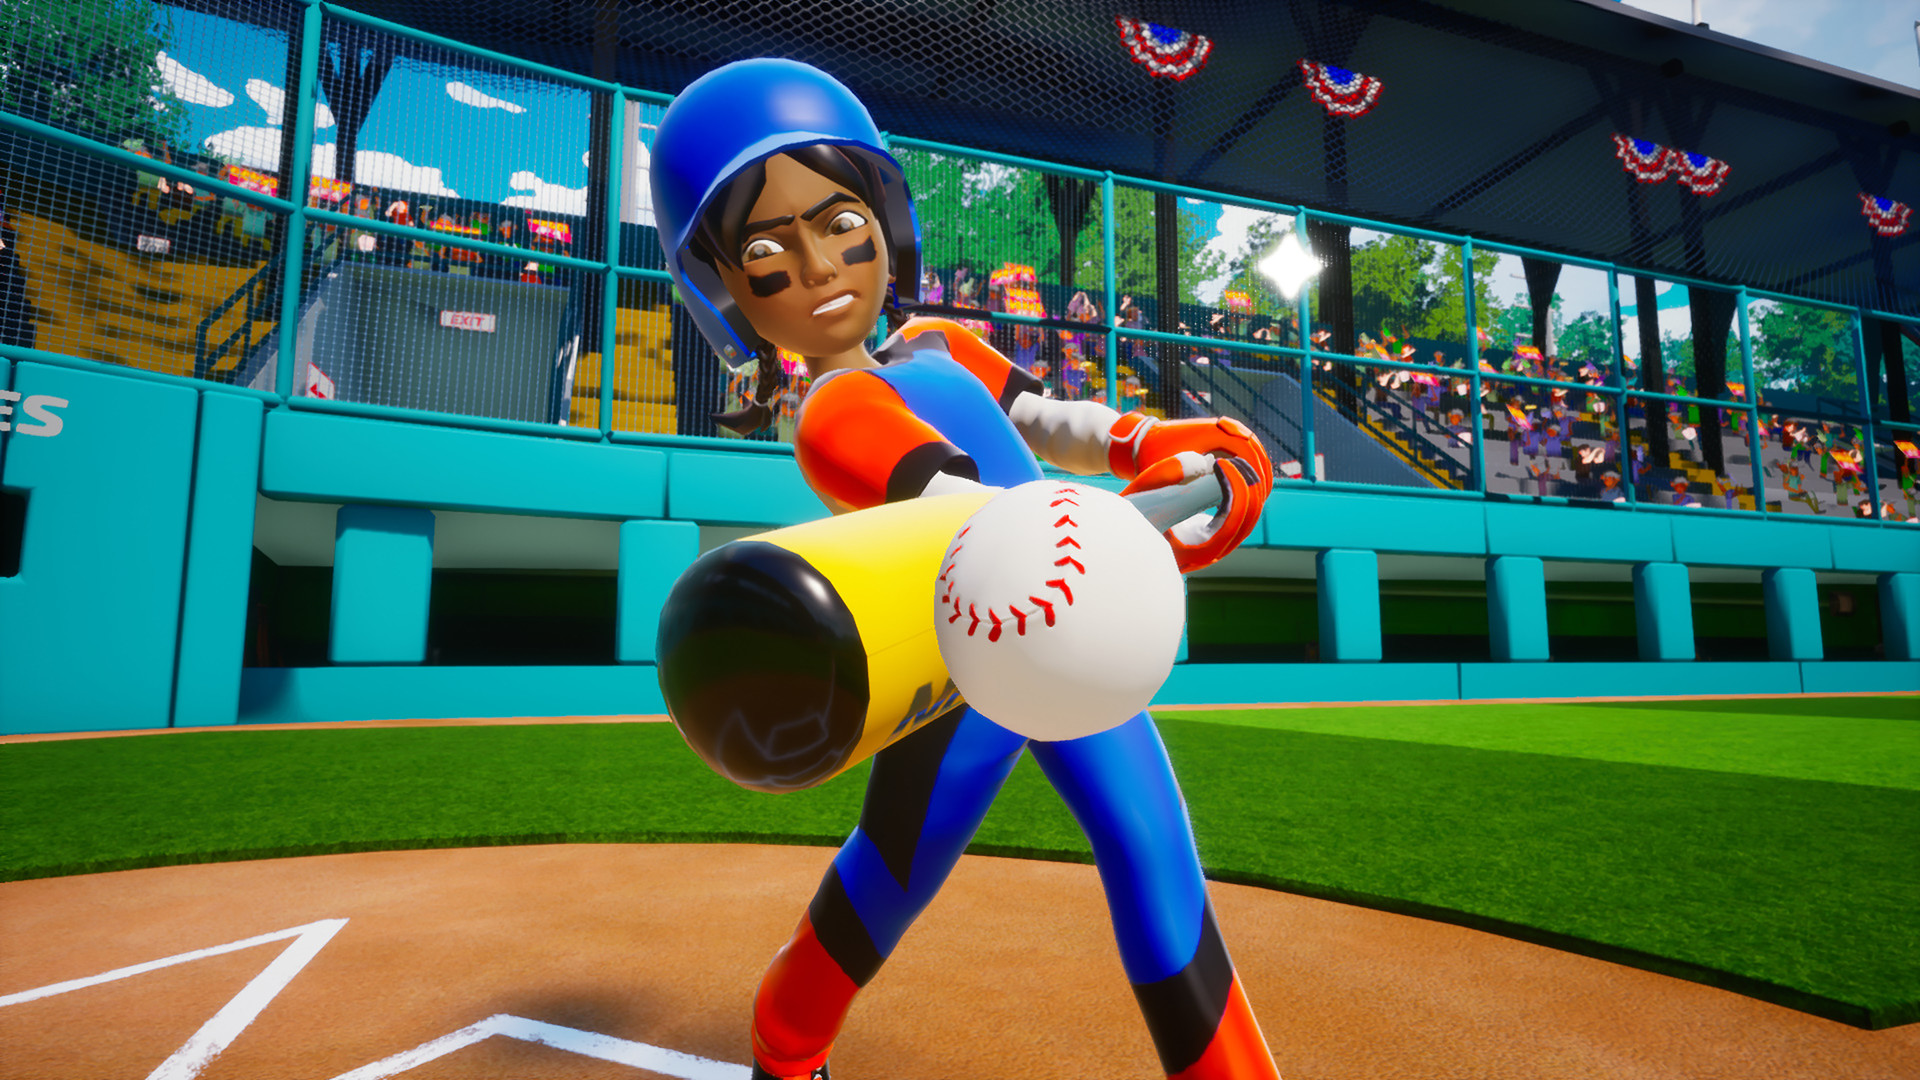 Little League World Series Baseball 2022 Steam CD Key [$ 0.59]